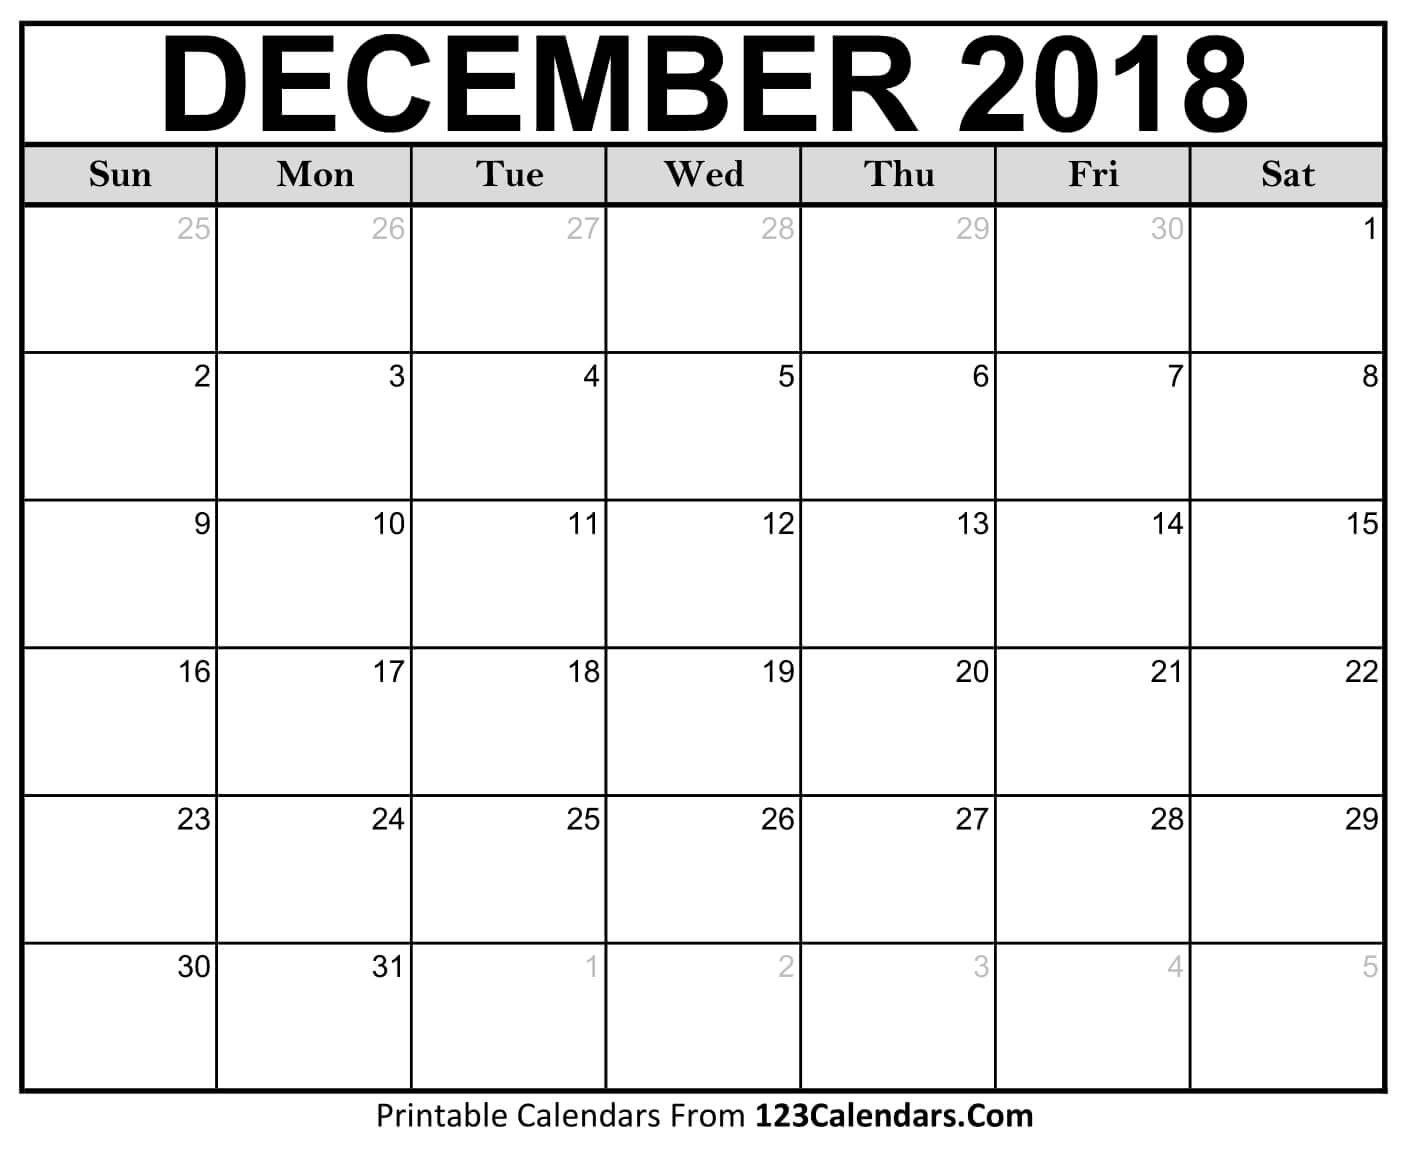 printable december 2018 calendar templates 123calendars com